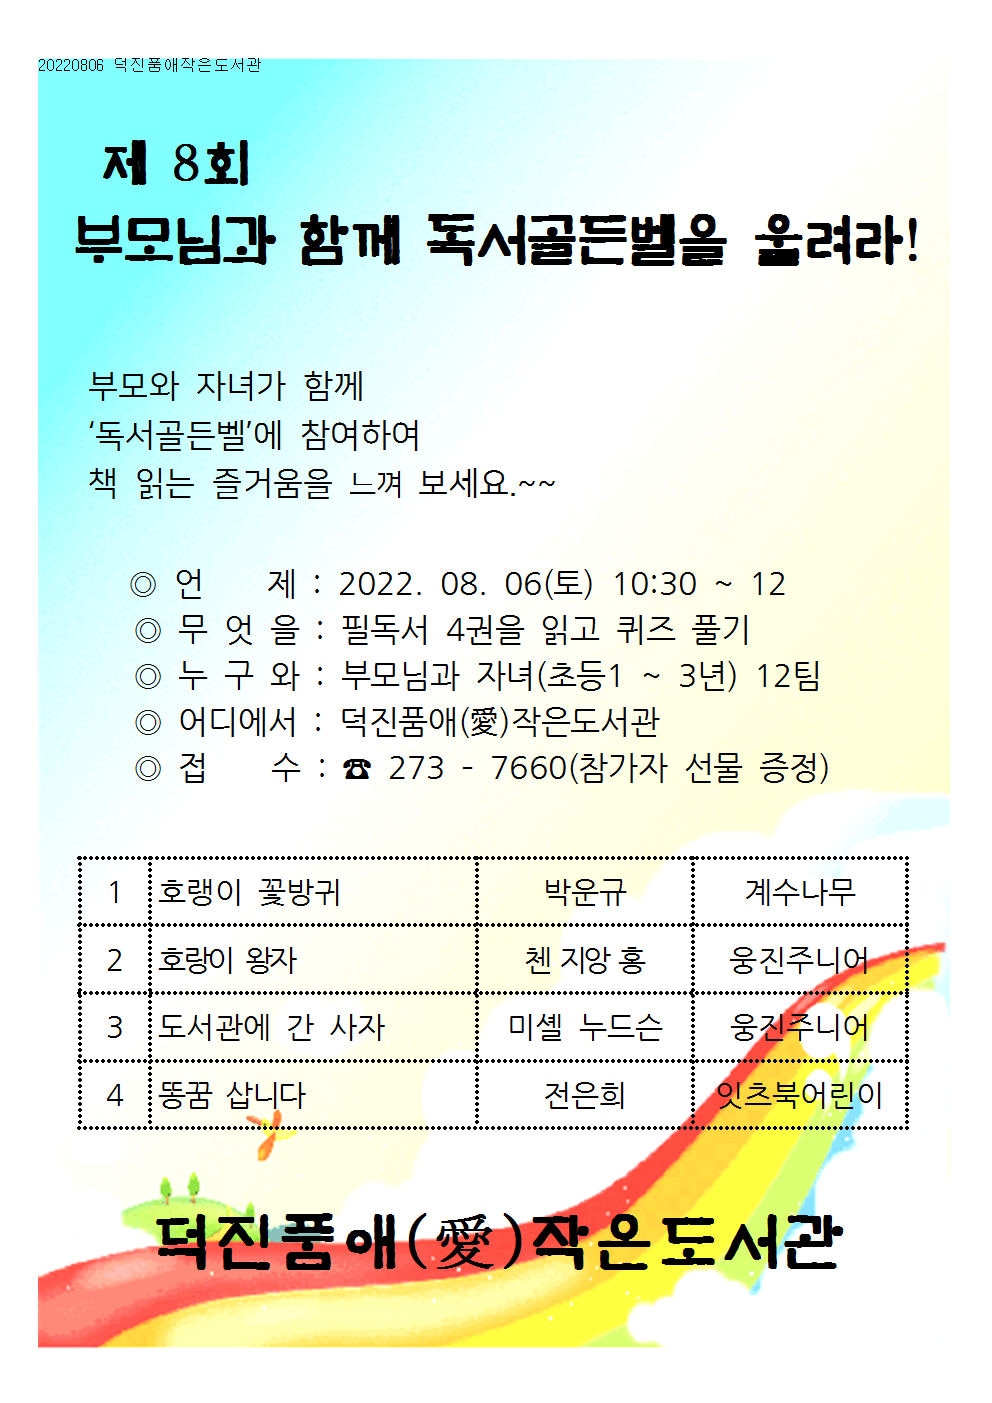 2022080 독서골든벨 홍보문001.png